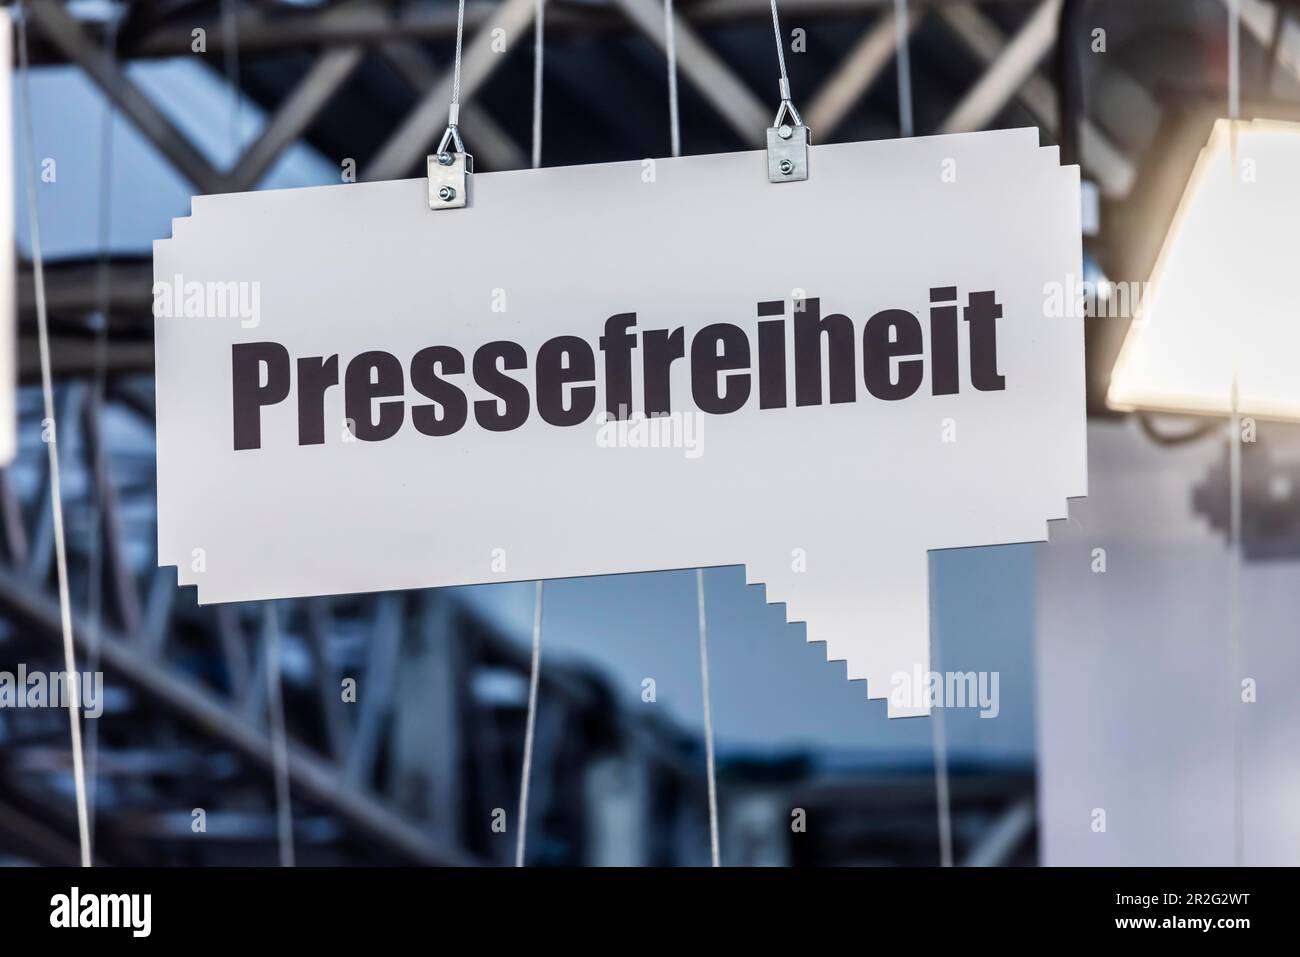 Libertad de prensa, palabras clave de alfabetización mediática, stand de la feria ARD, ZDF y Deutschlandradio, feria de educación Didacta, Stuttgart Foto de stock